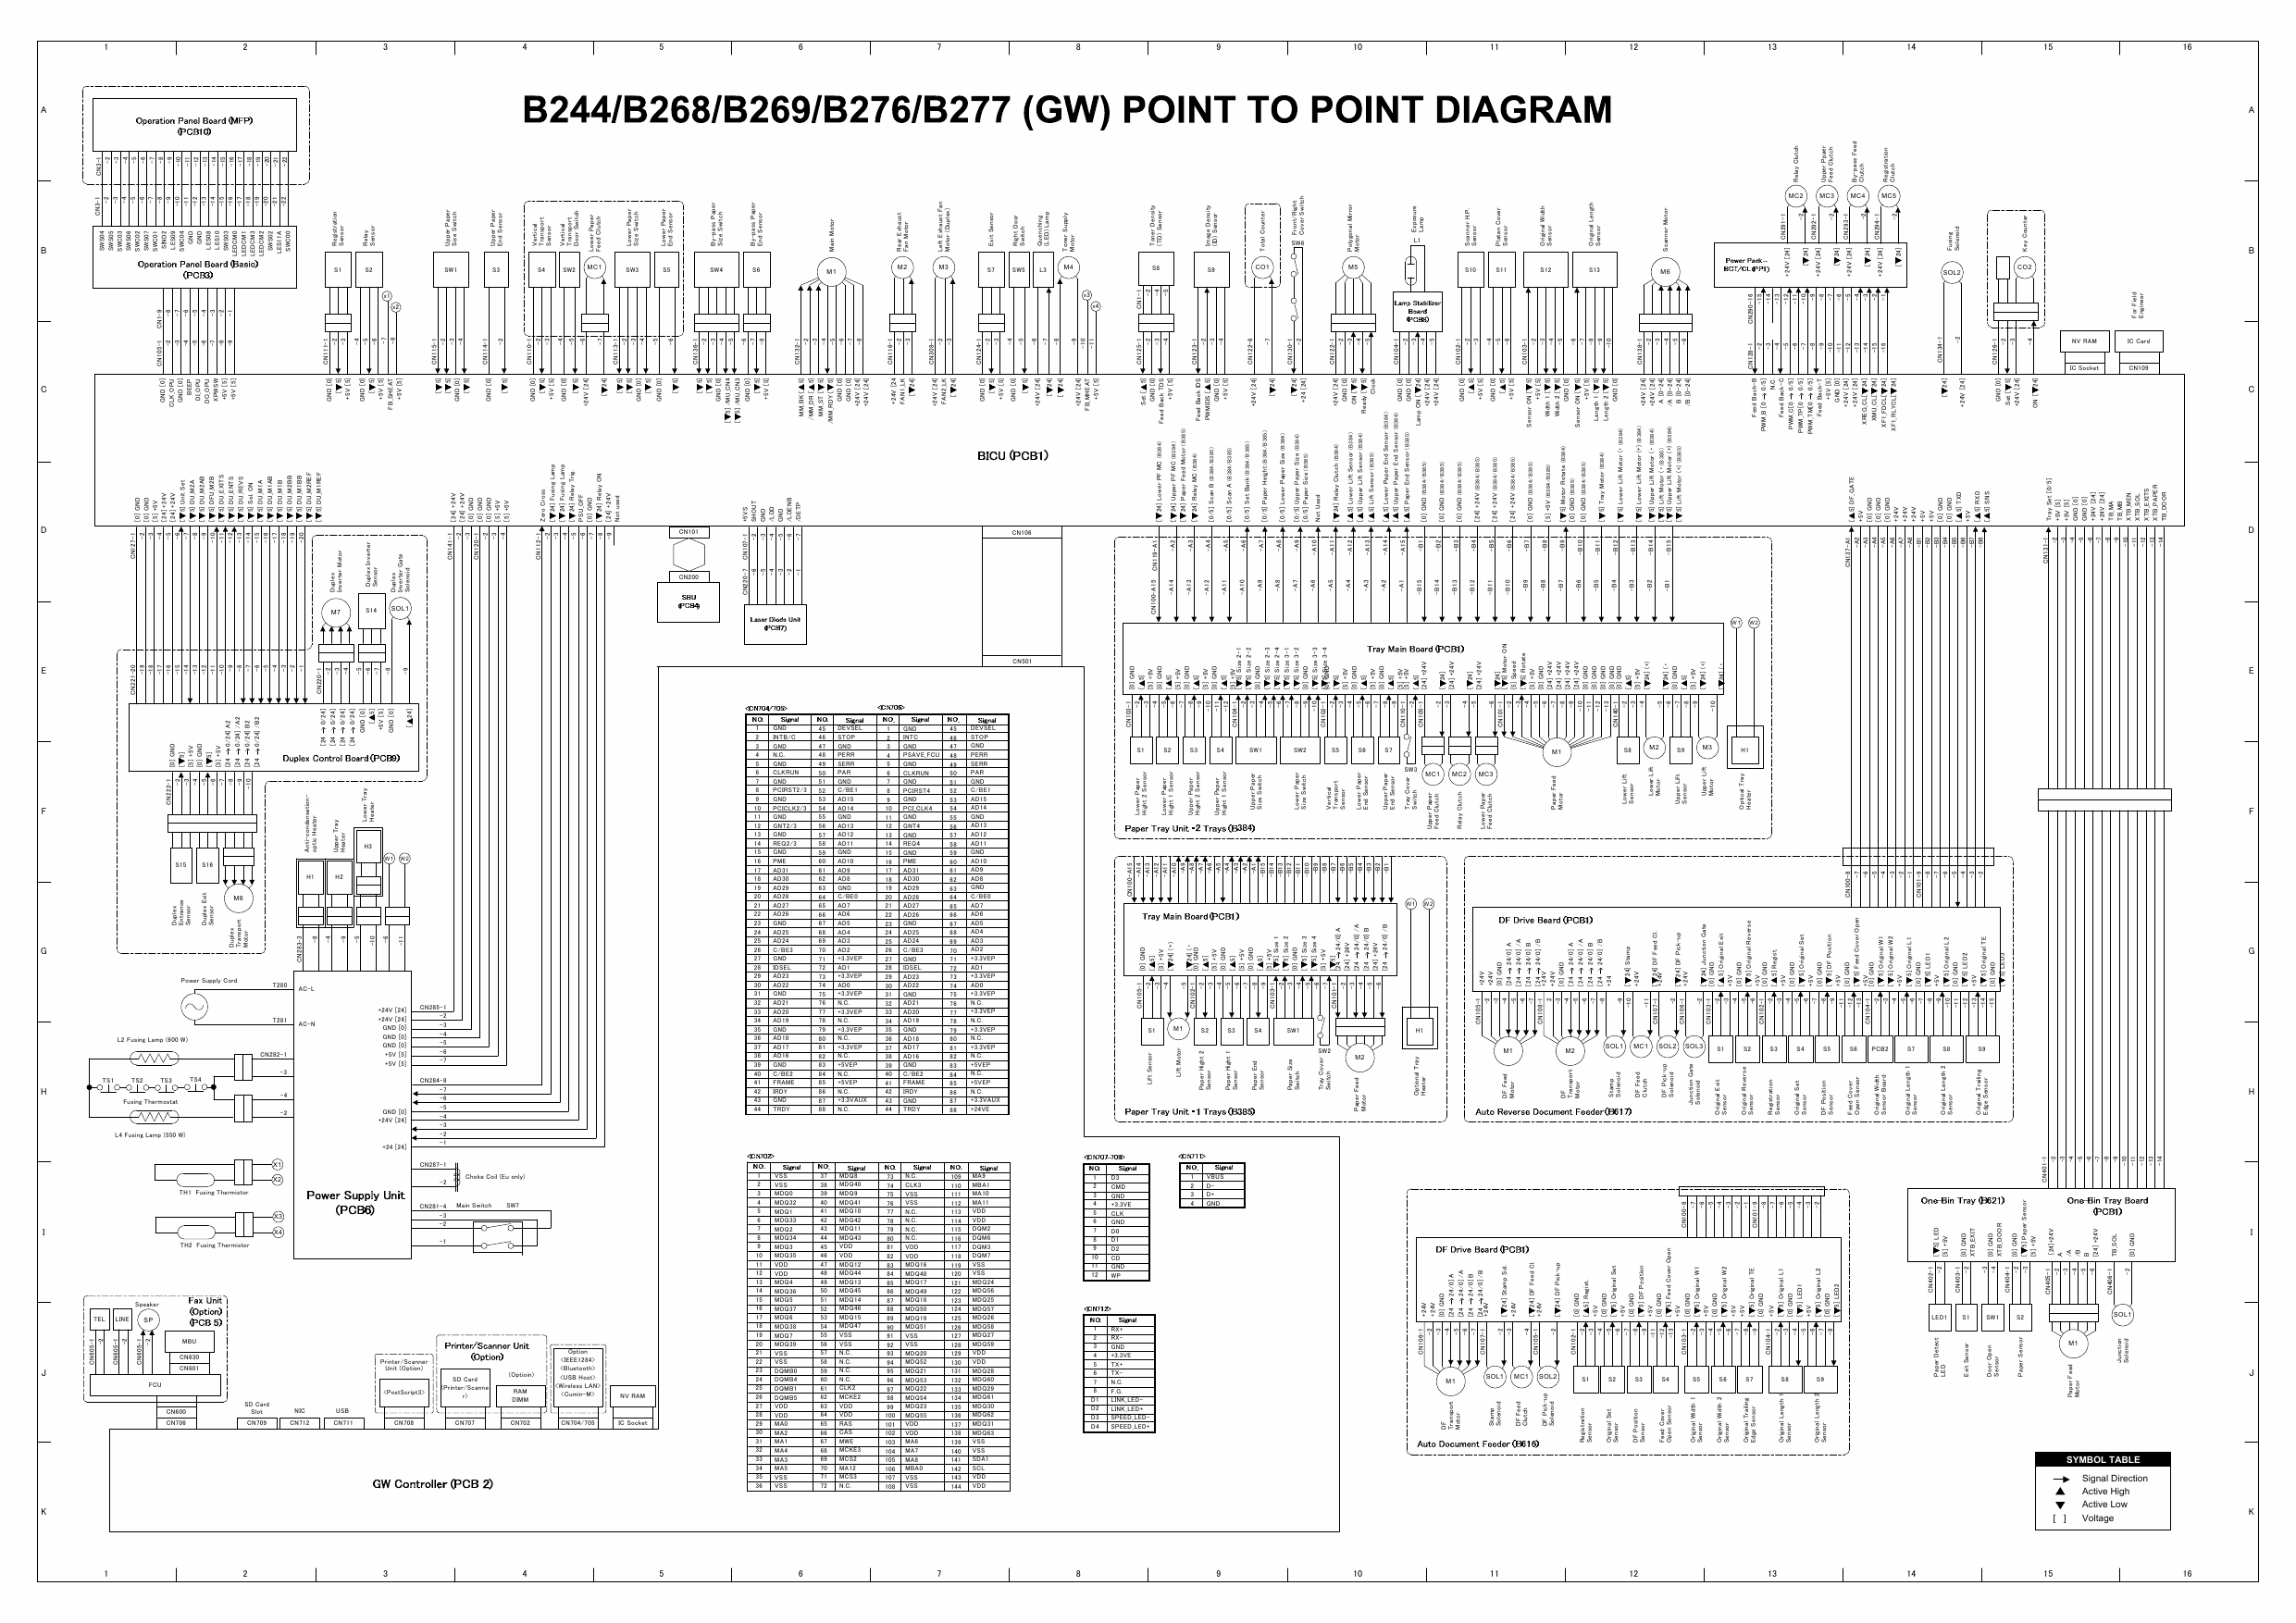 RICOH Aficio MP-1600L2 B244 B276 B277 B268 B269 Circuit Diagram-3